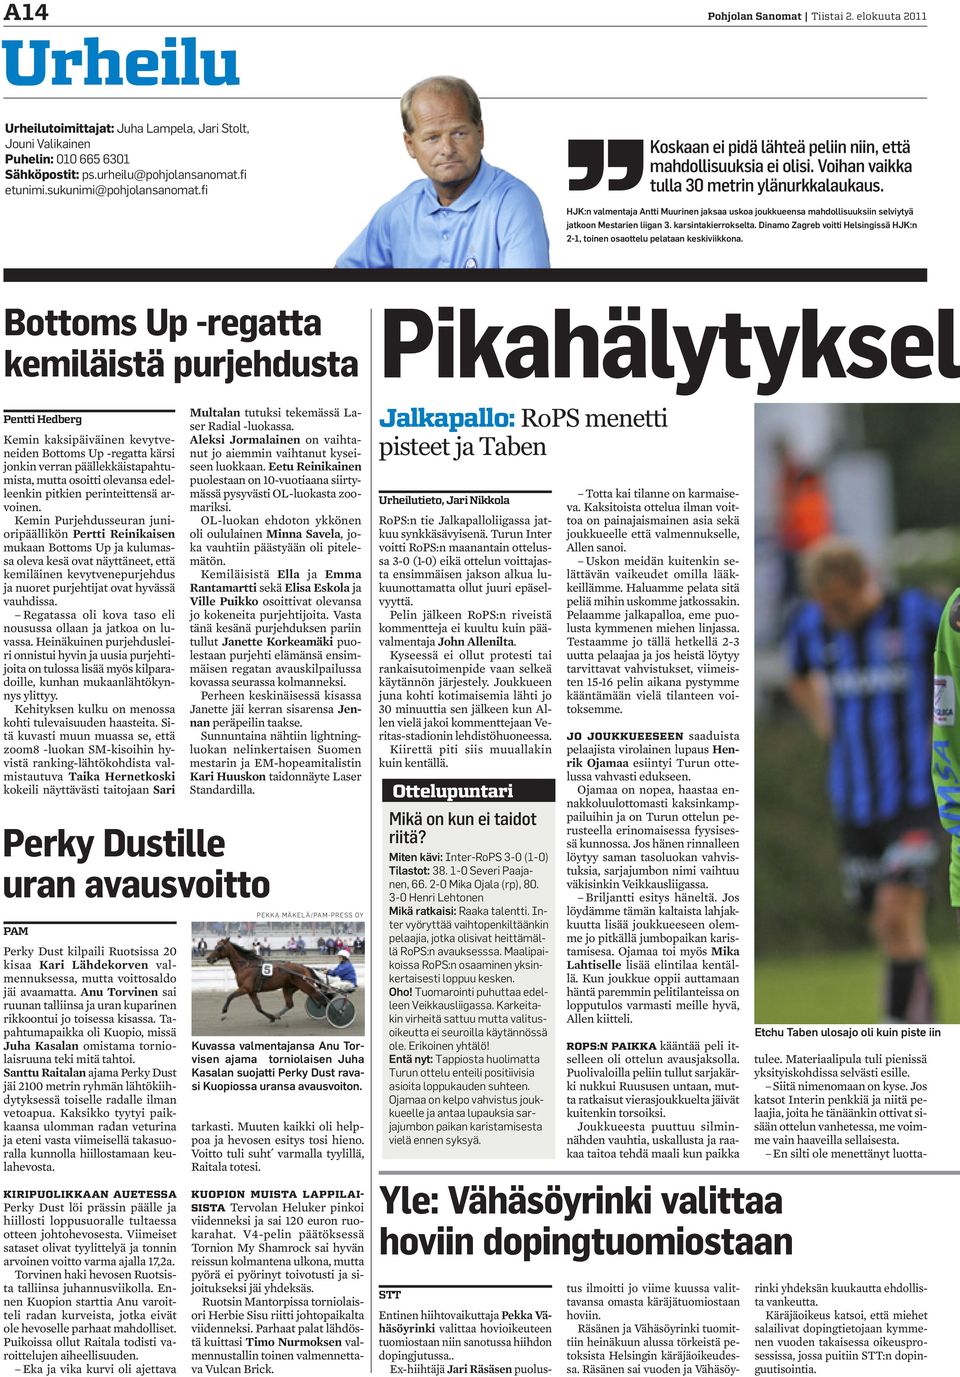 HJK:n valmentaja Antti Muurinen jaksaa uskoa joukkueensa mahdollisuuksiin selviytyä jatkoon Mestarien liigan 3. karsintakierrokselta.